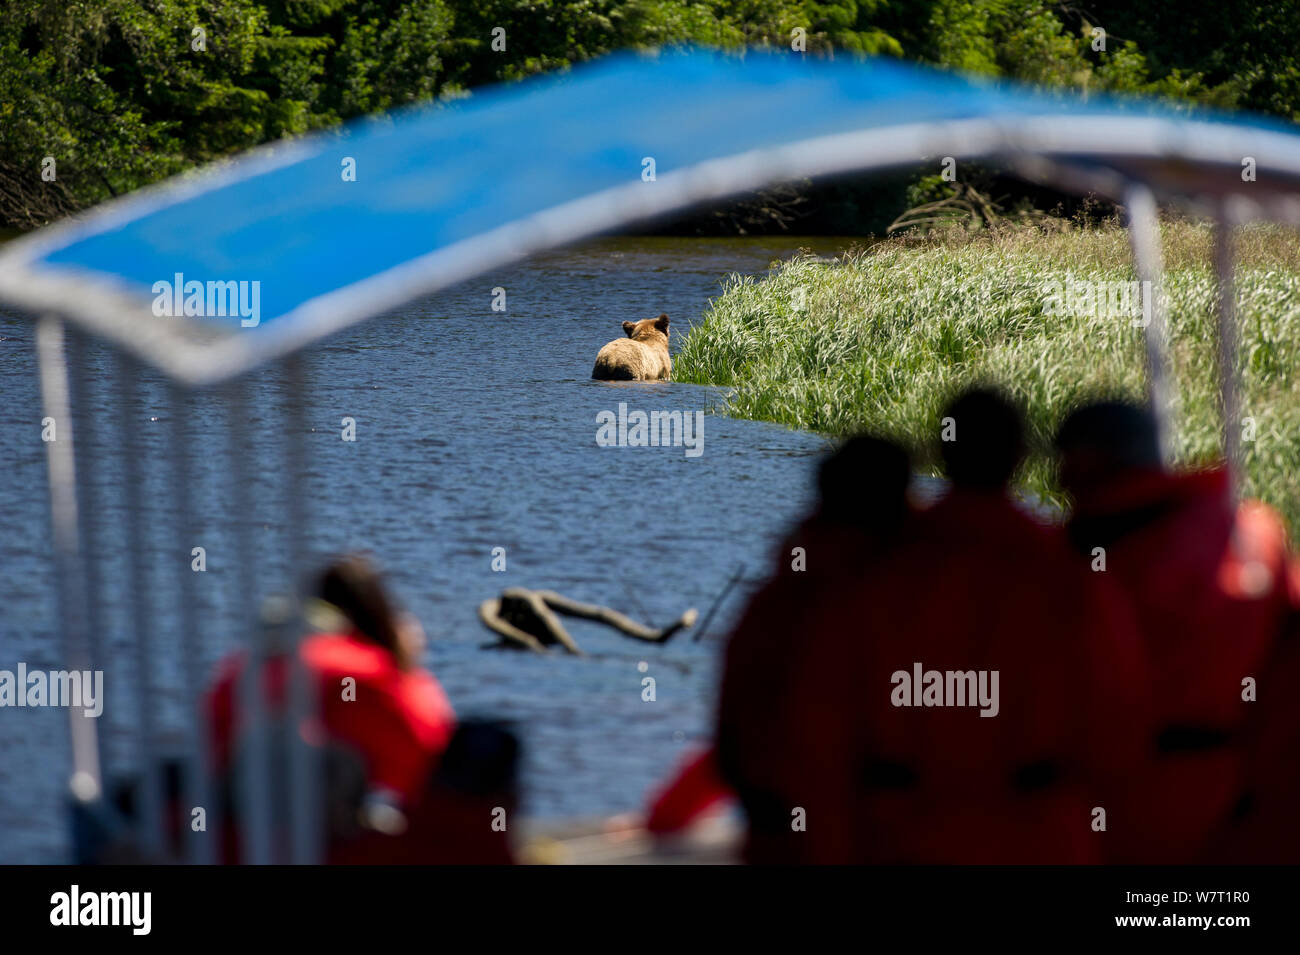 Les touristes regarder un ours brun de l'Amérique du Nord ou l'ours grizzli (Ursus arctos horribilis) nager à travers un canal d'eau, de l'observation de l'ours brun à fond plat bateau. Knight Inlet, sur la côte est, dans l'île de Vancouver, Colombie-Britannique, Canada, juillet 2012. Banque D'Images